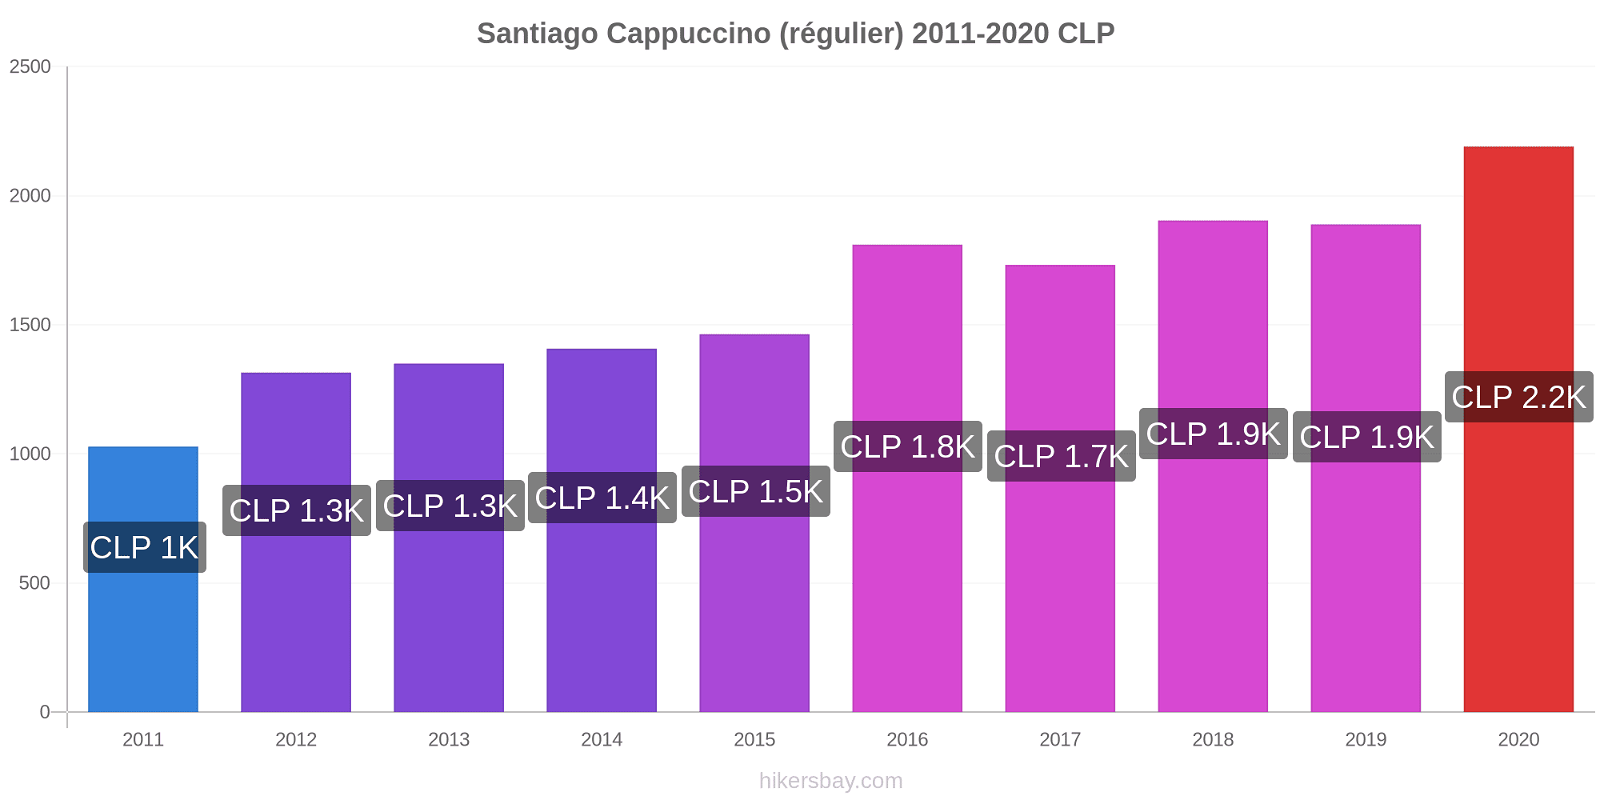 Santiago changements de prix Cappuccino (régulier) hikersbay.com